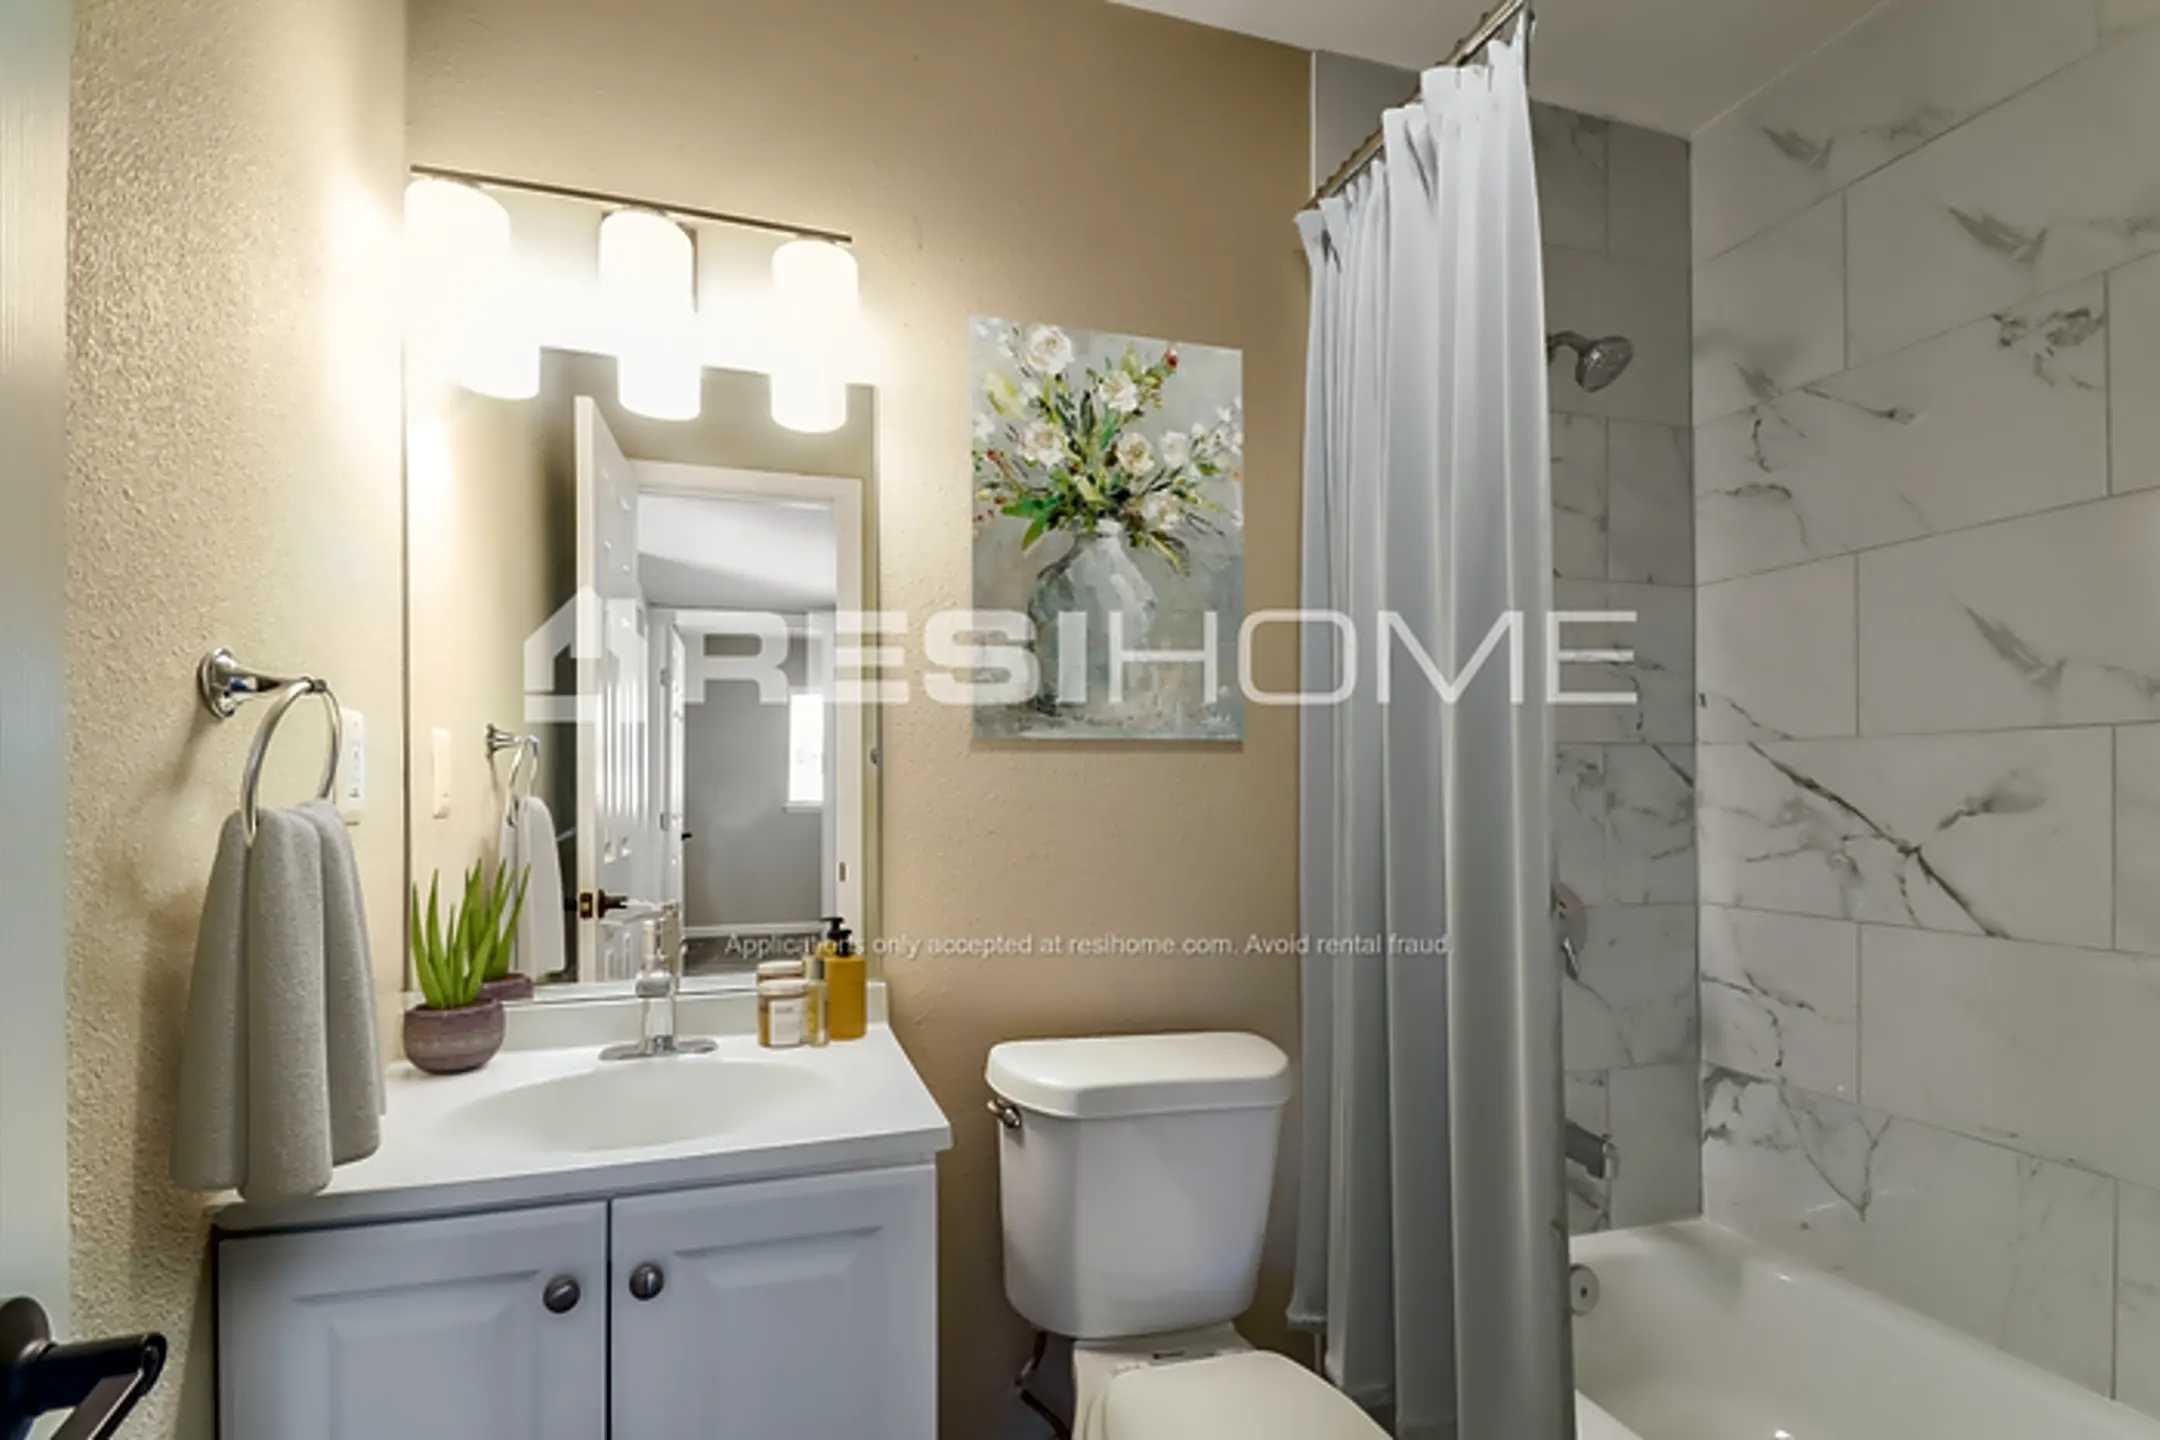 Bathroom - 1501 Lorraine Drive - Plano, TX